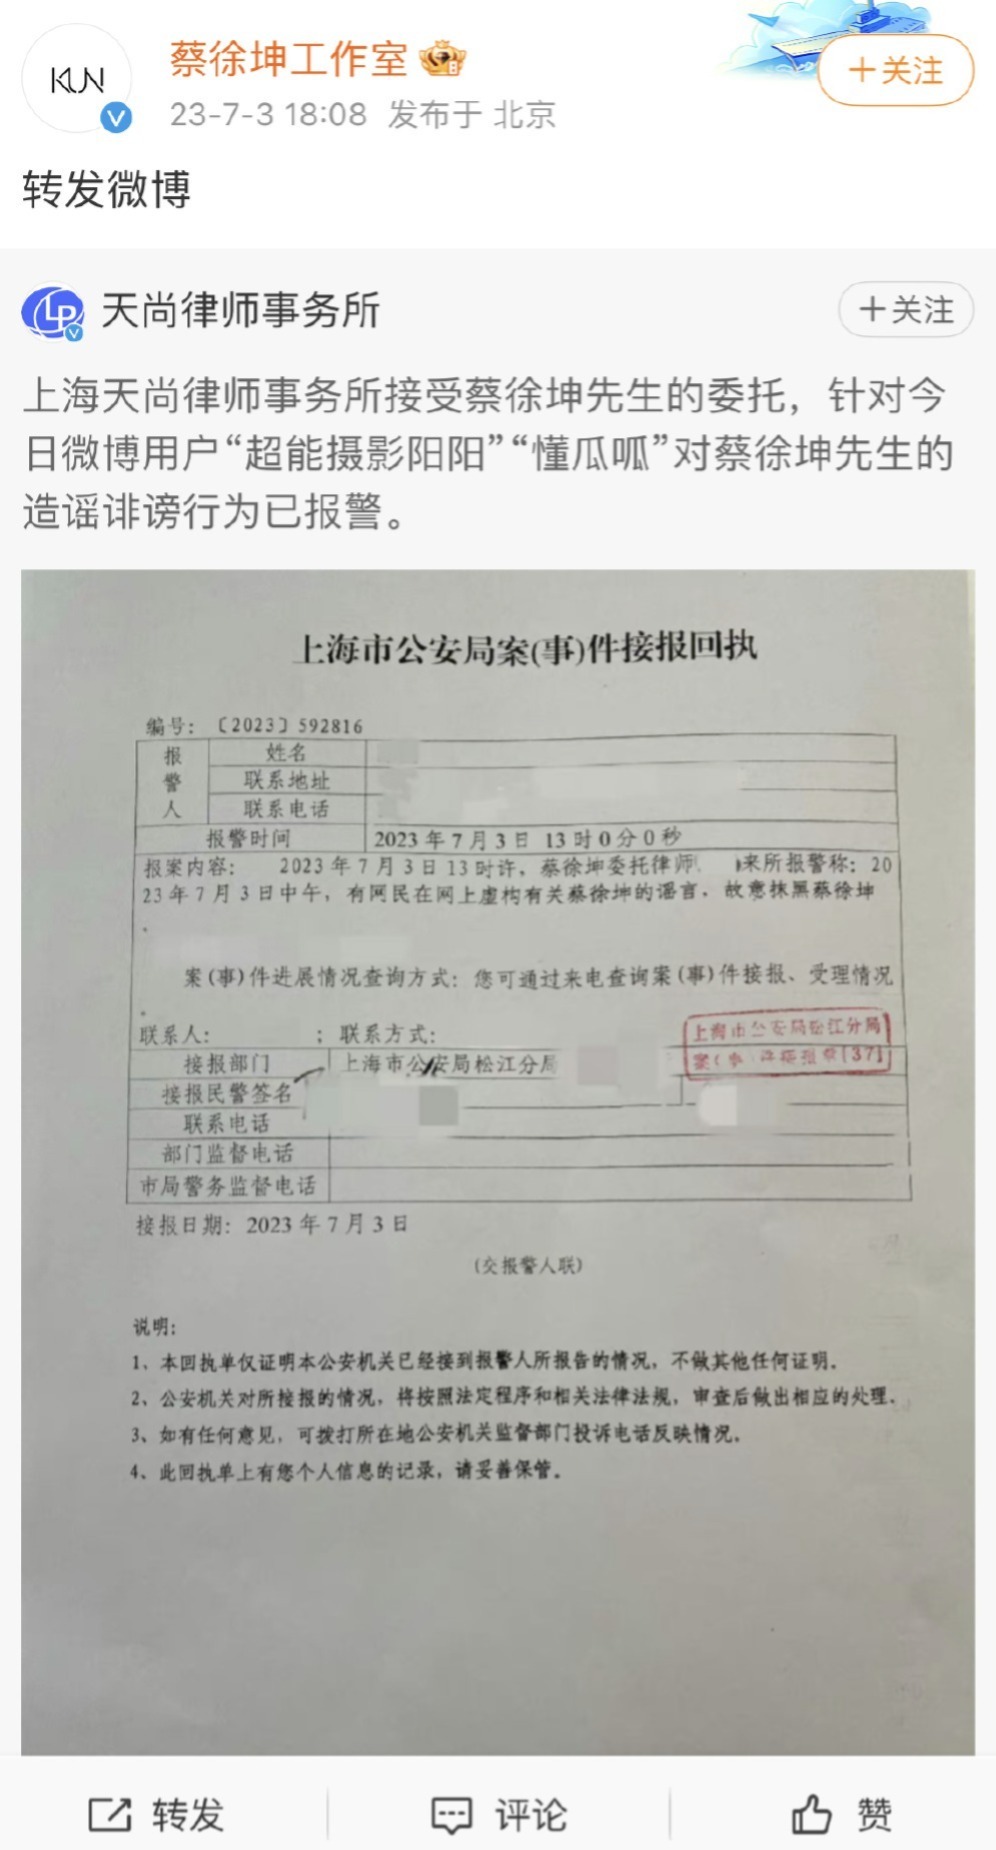 蔡徐坤工作室称对造谣诽谤已报警 转发律师报警回执单